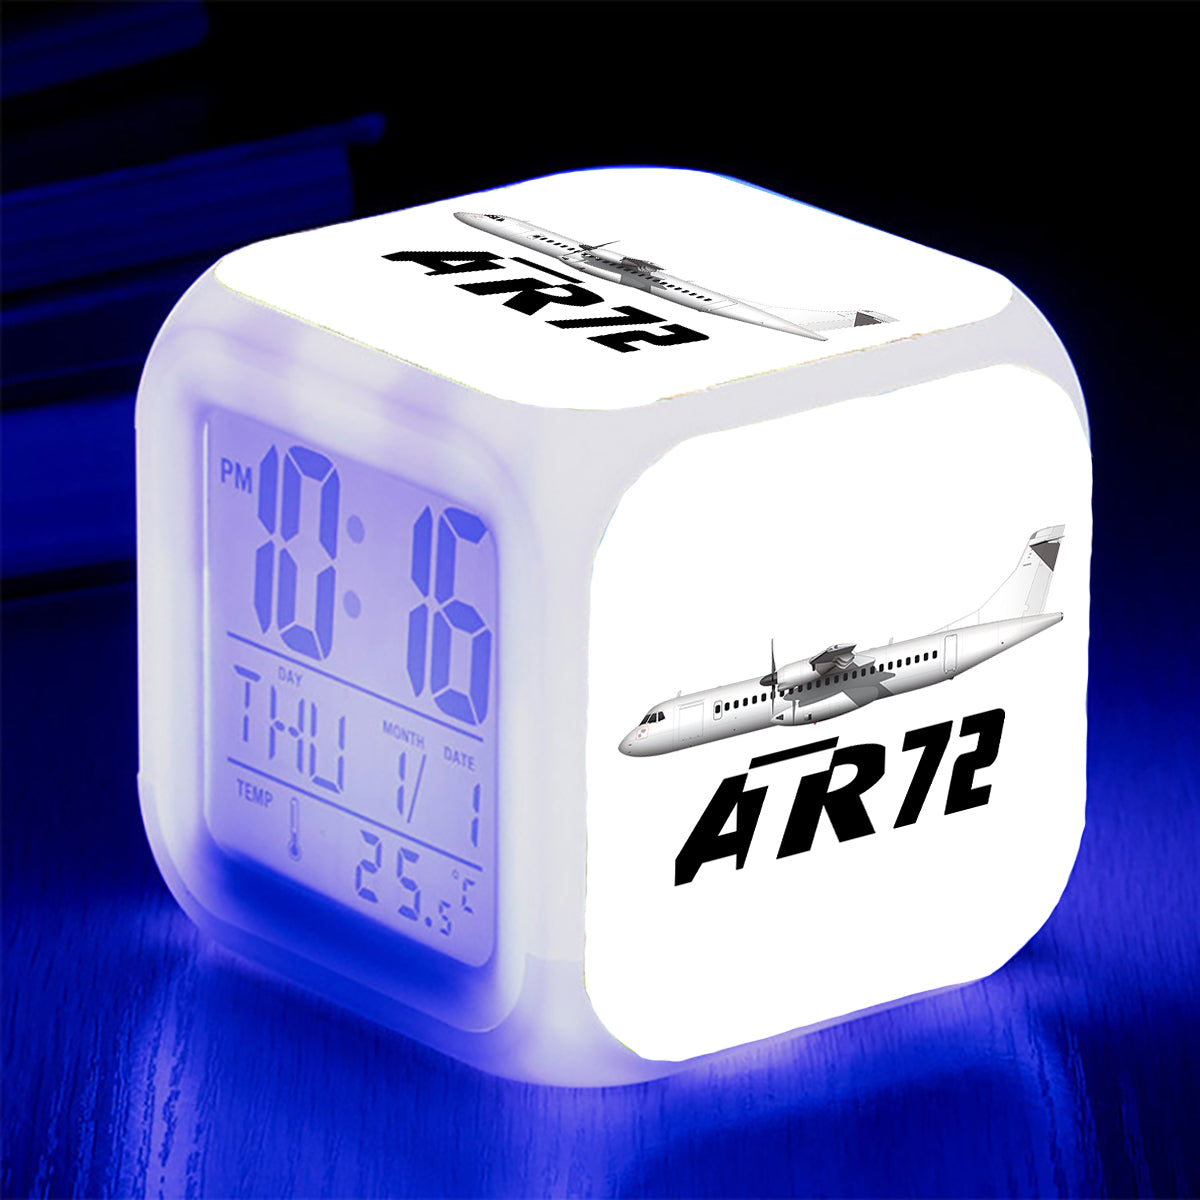 The ATR72 Designed "7 Colour" Digital Alarm Clock